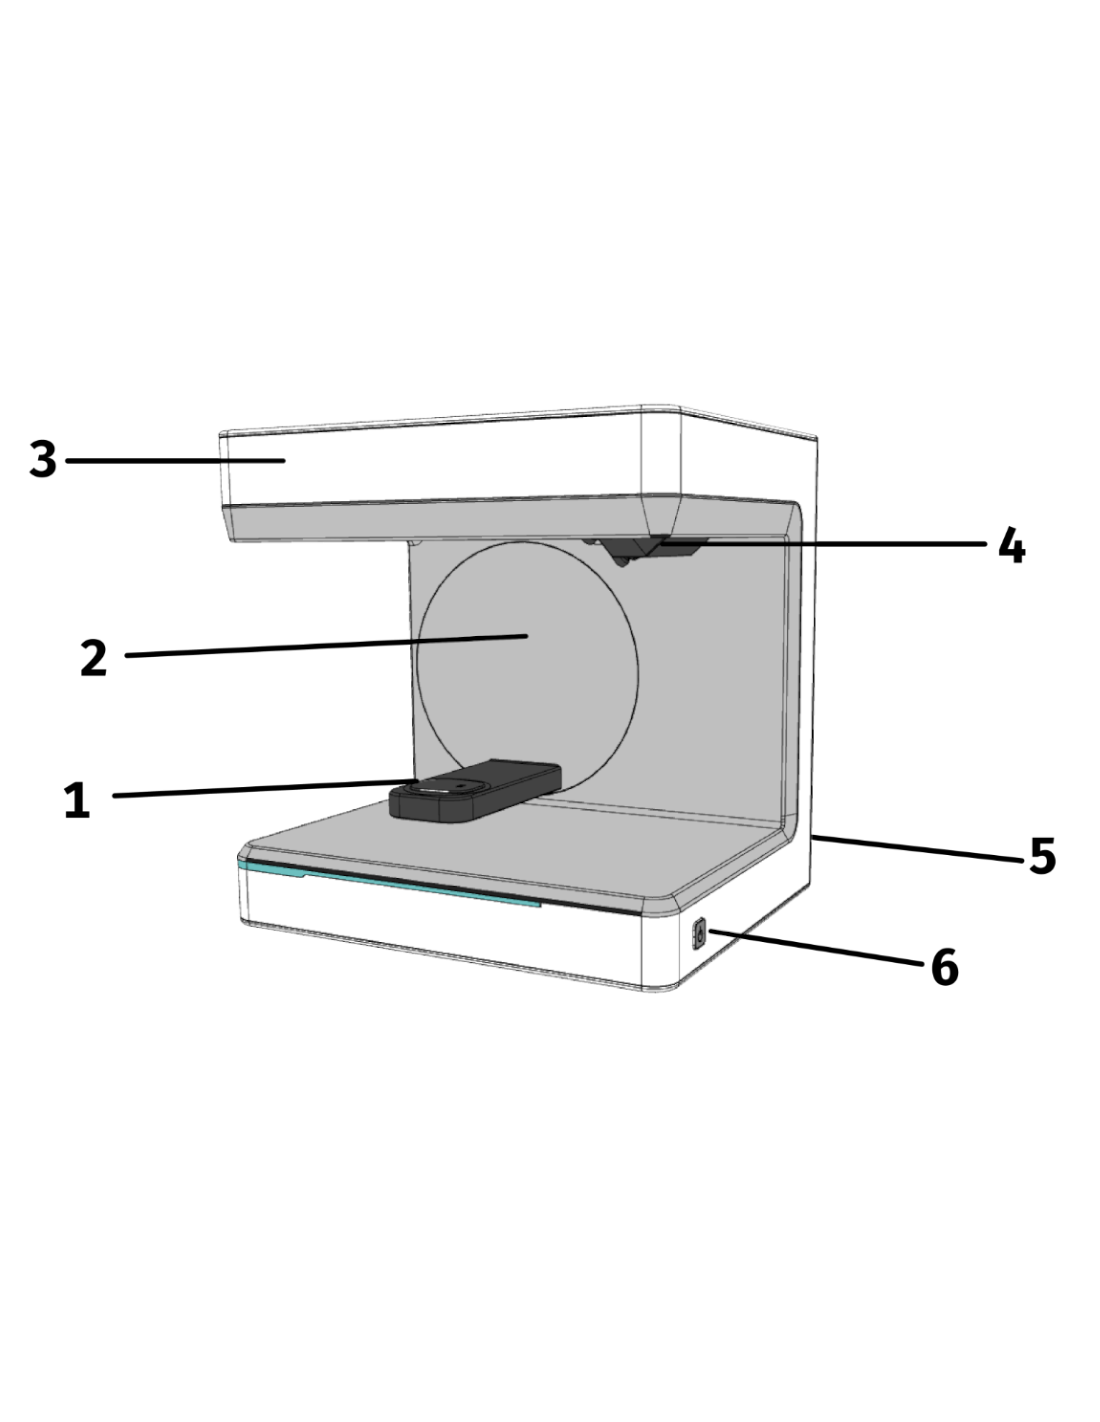 Artec Micro II - Scanner 3D